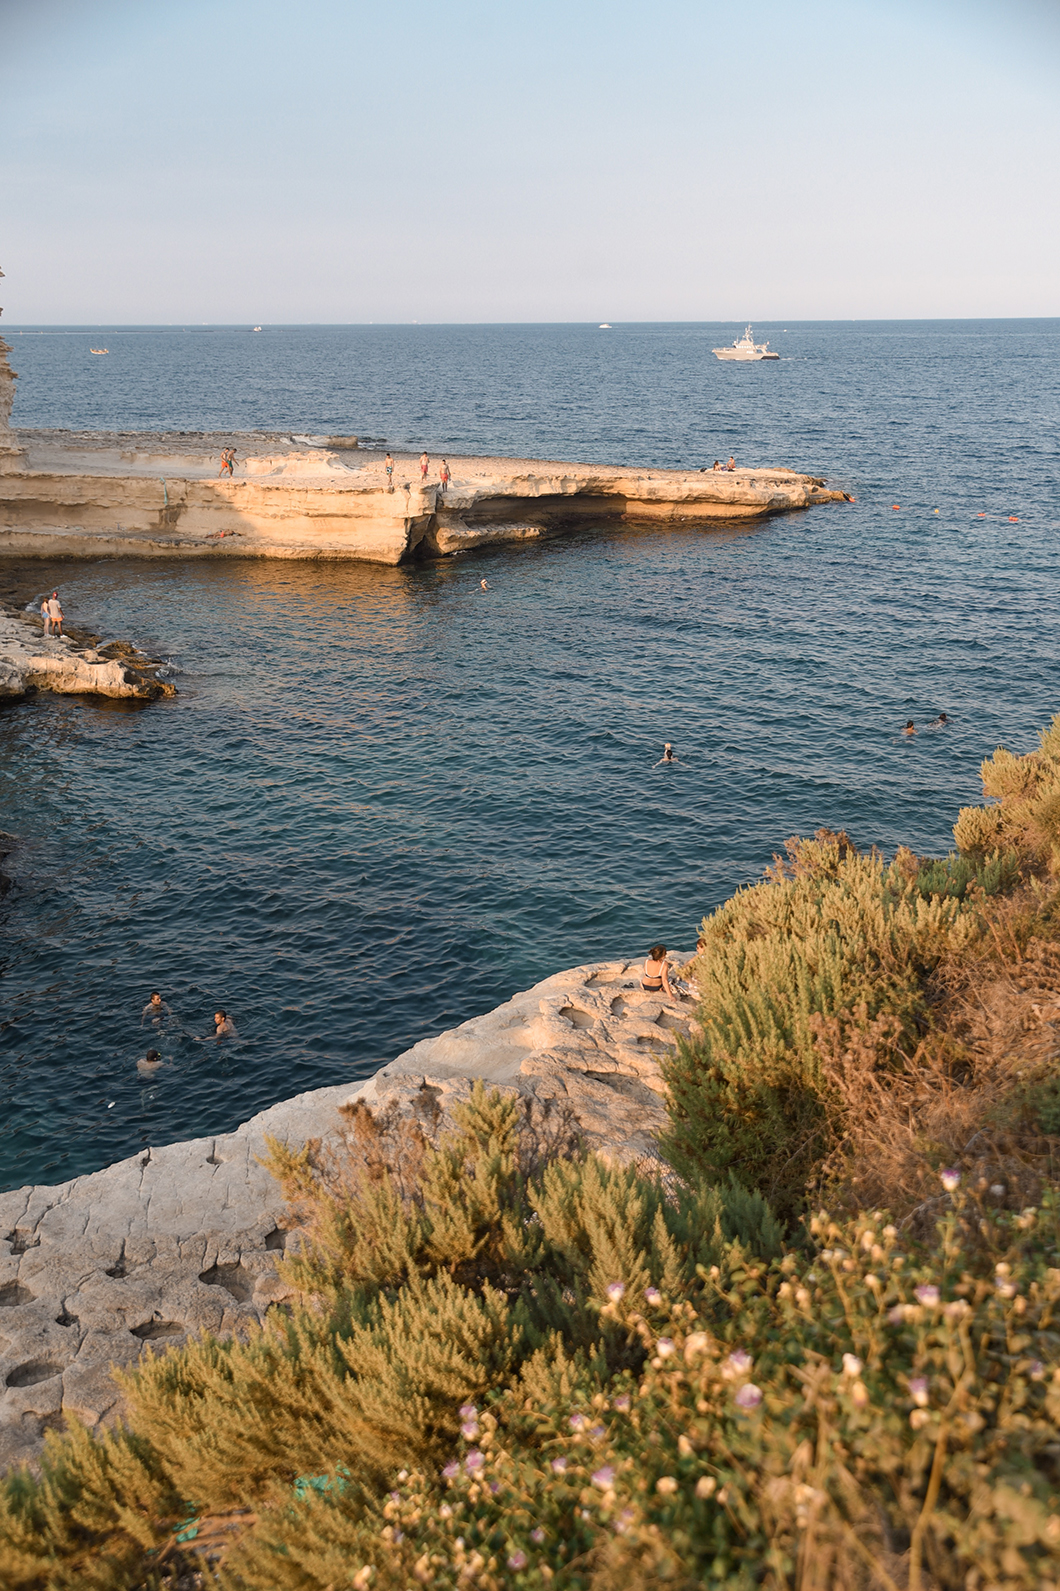 St Peter’s pool, piscine naturelle à Malte